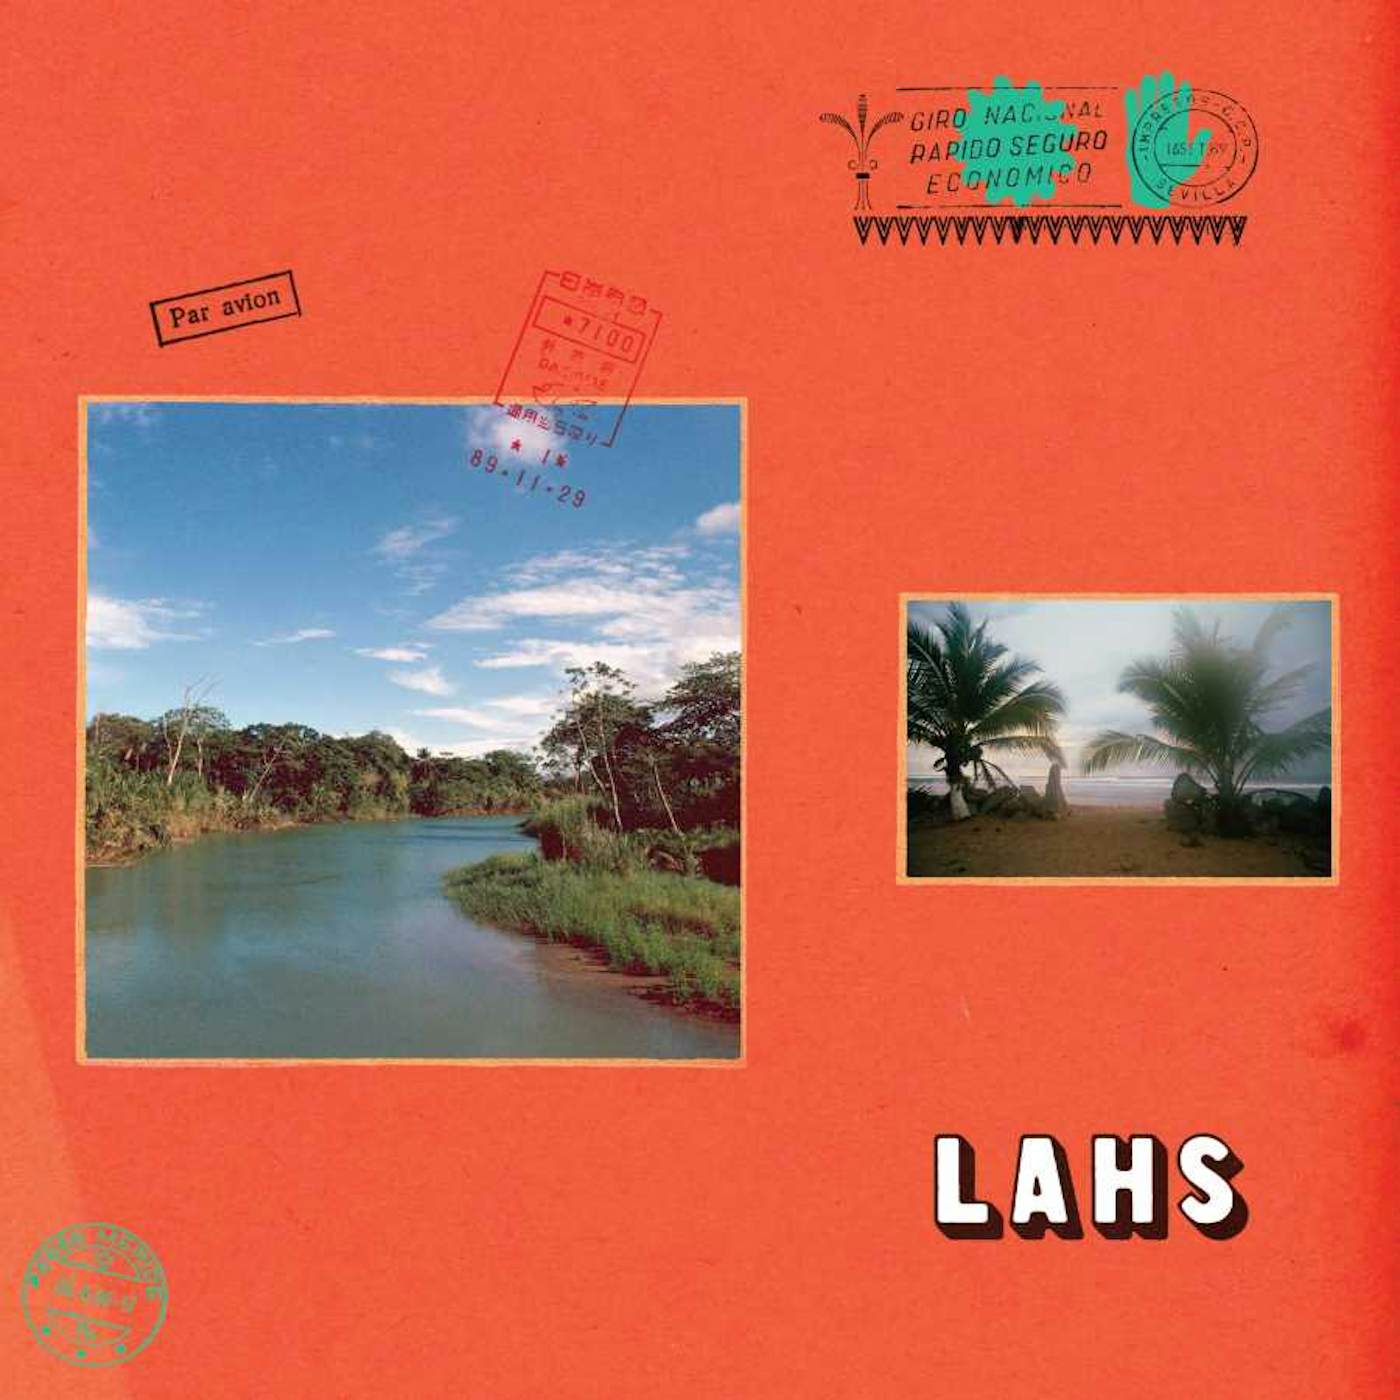 Allah-Las LAHS CD